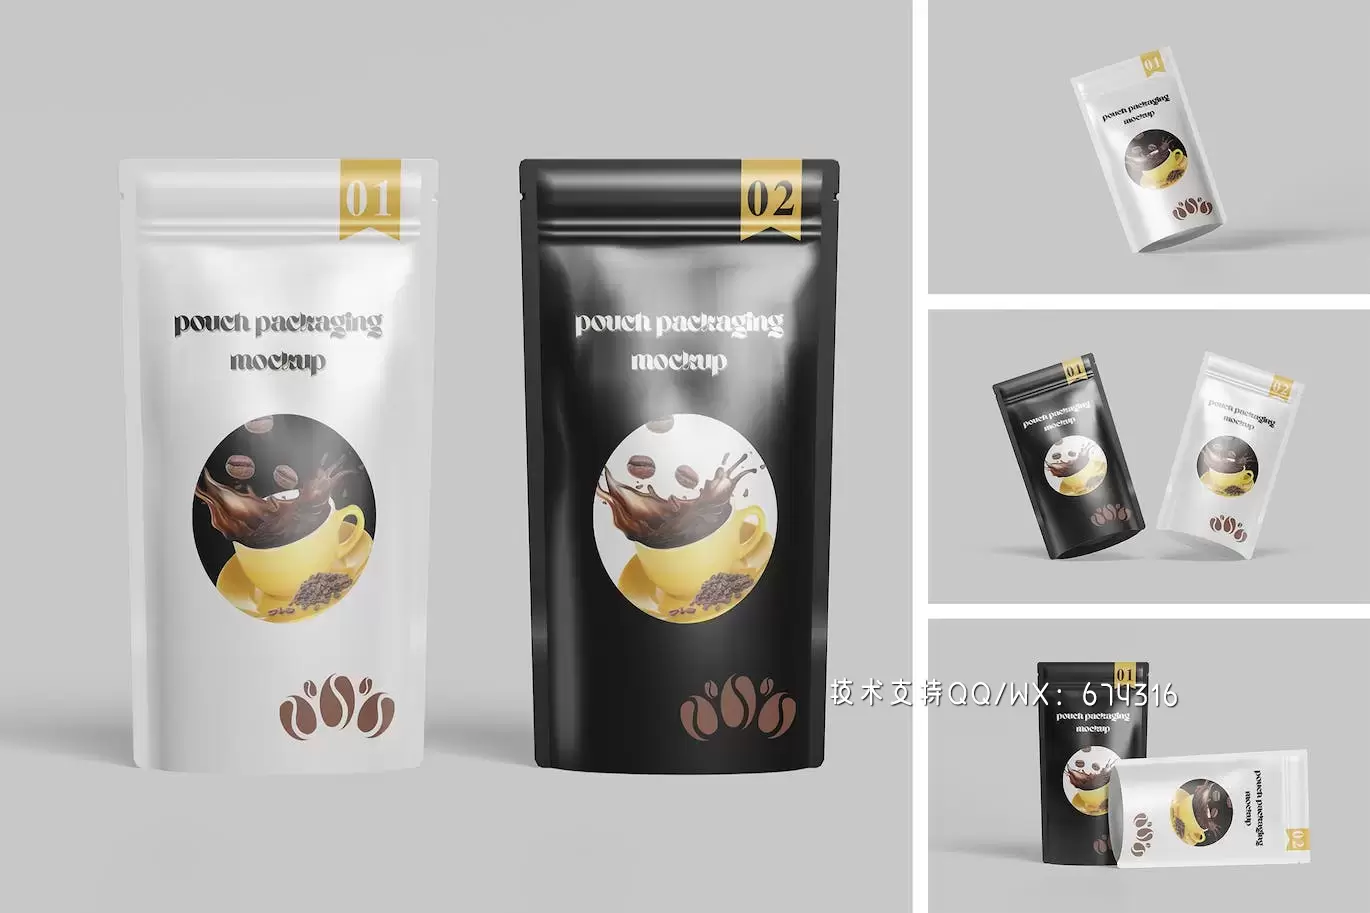 咖啡豆小袋包装样机 (PSD)免费下载